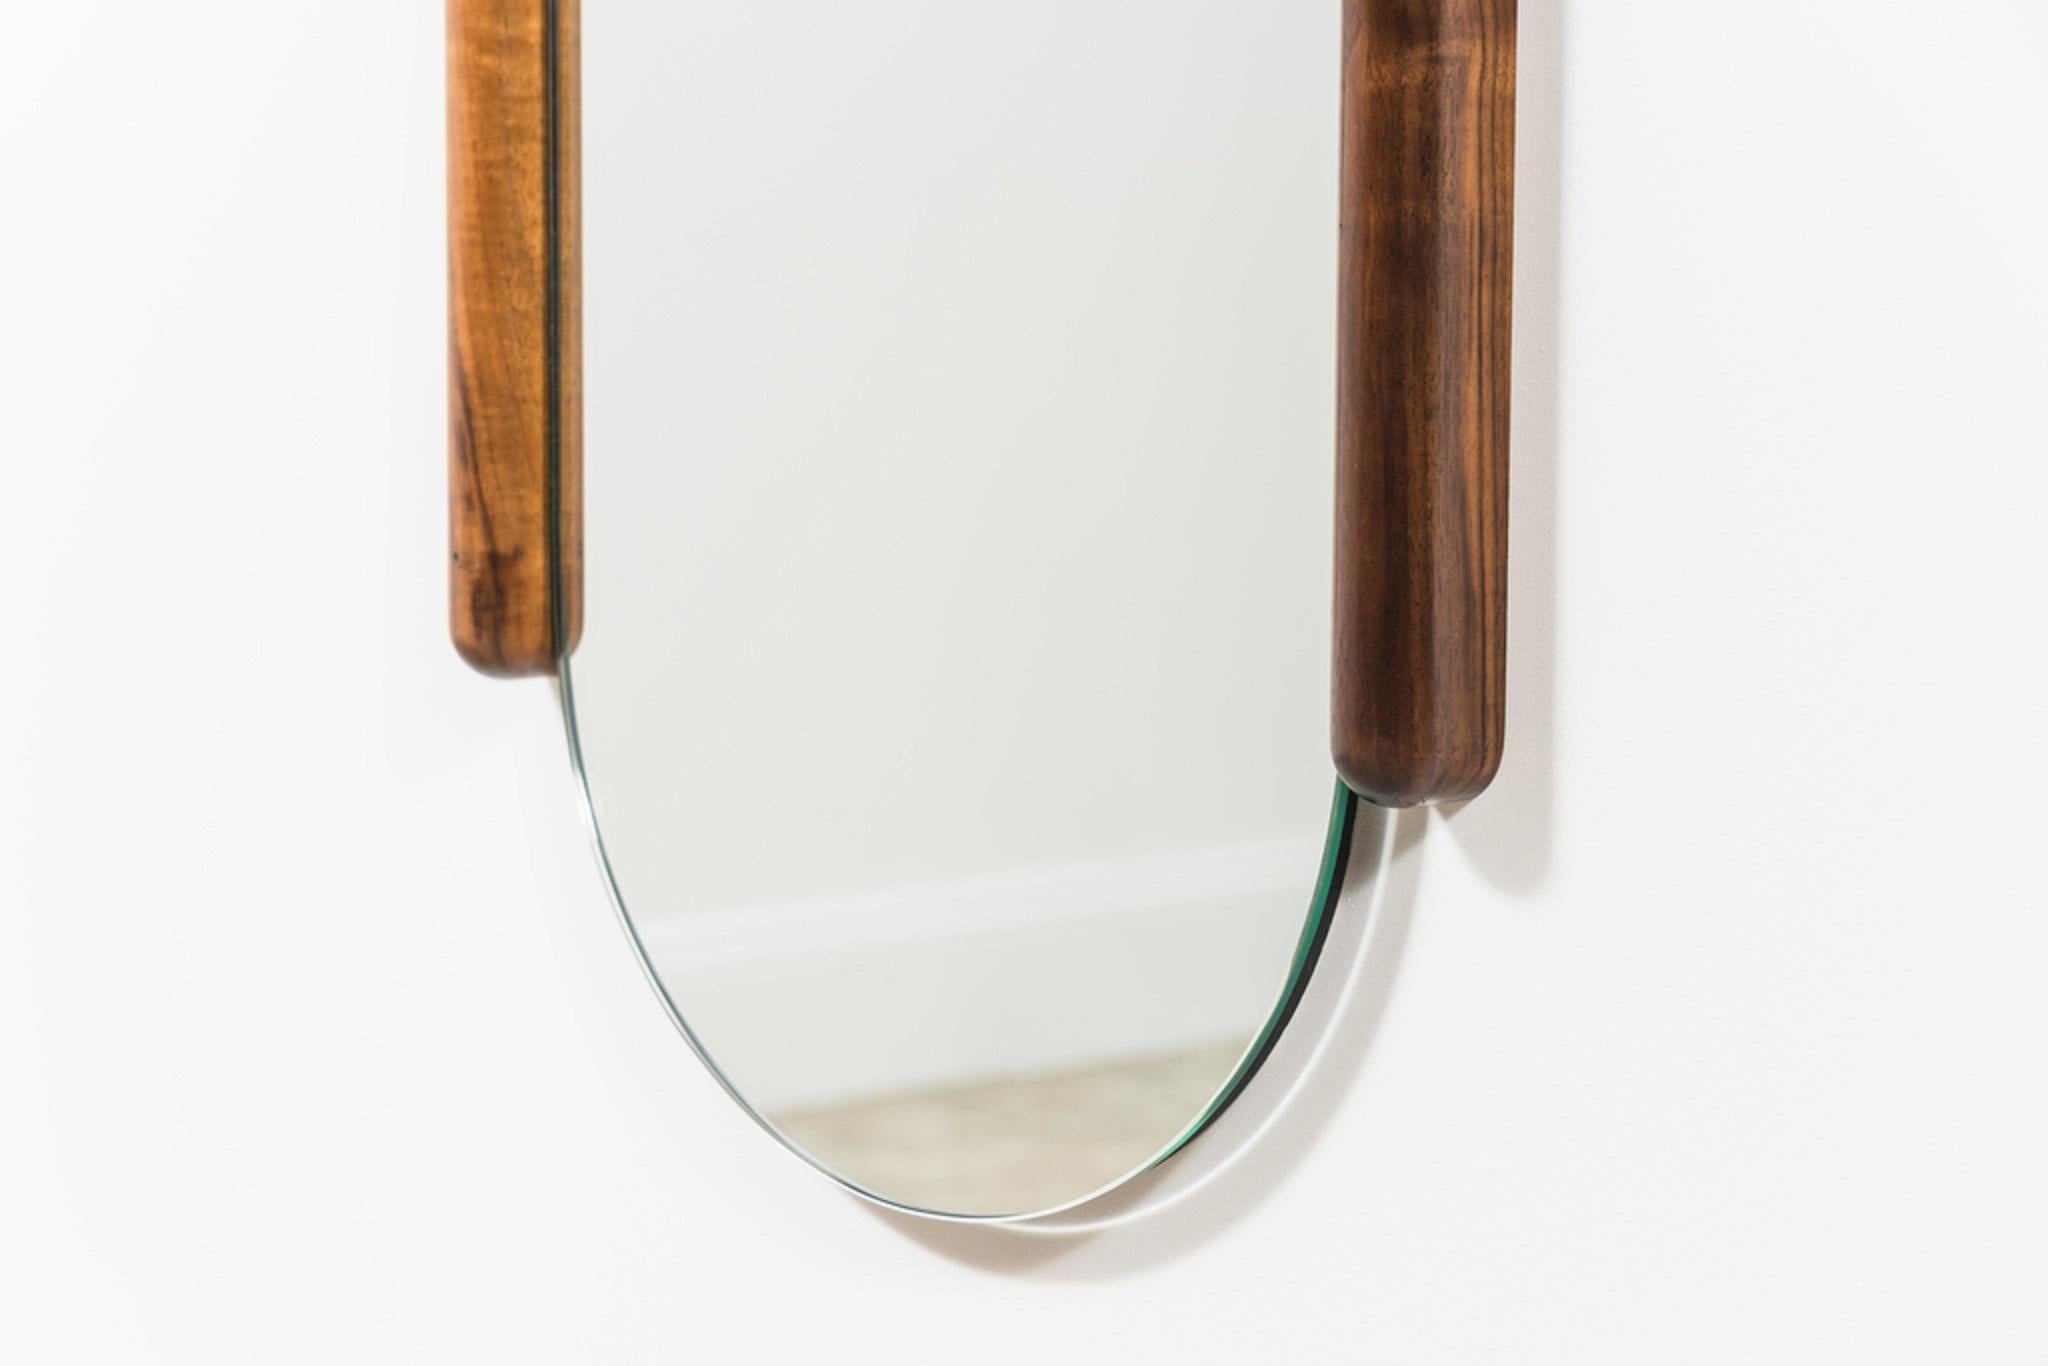 Le design du miroir Tall Halo s'inspire de la beauté de la menuiserie. Les essences de bois contrastées soulignent les liens entre les éléments du cadre et le profil arqué vers le bas du miroir semble marquer l'attraction de la gravité, à laquelle